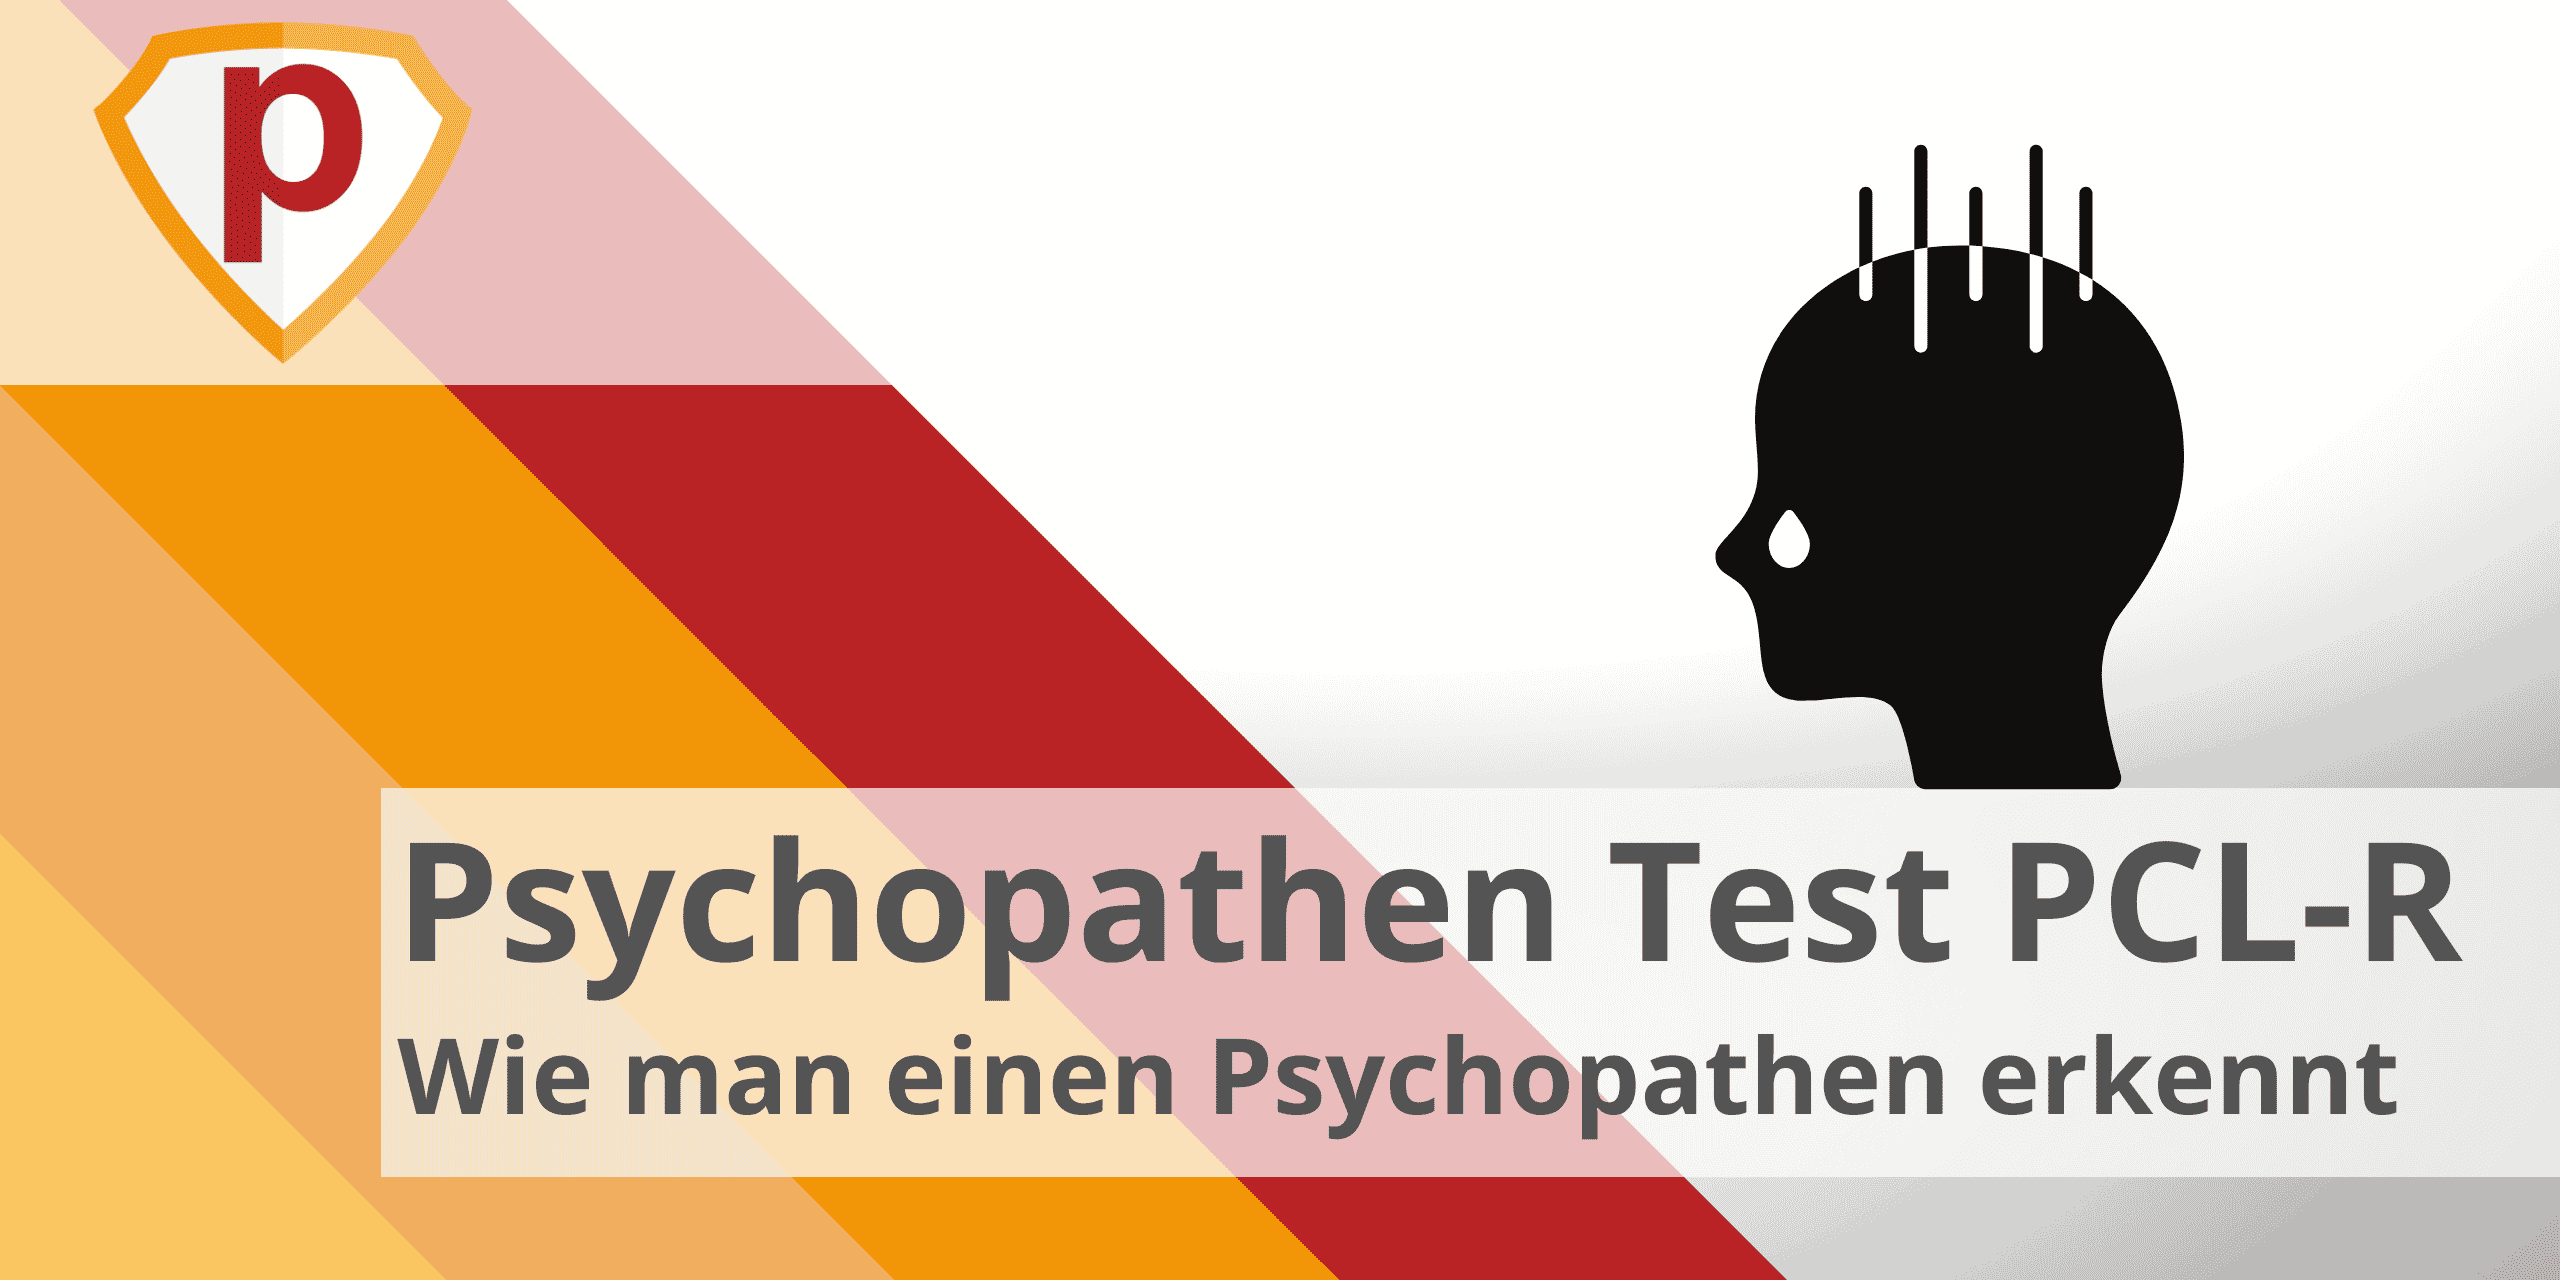 ᐅ Psychopathen Test PCL-R - Wie erkennt man einen Psychopathen?